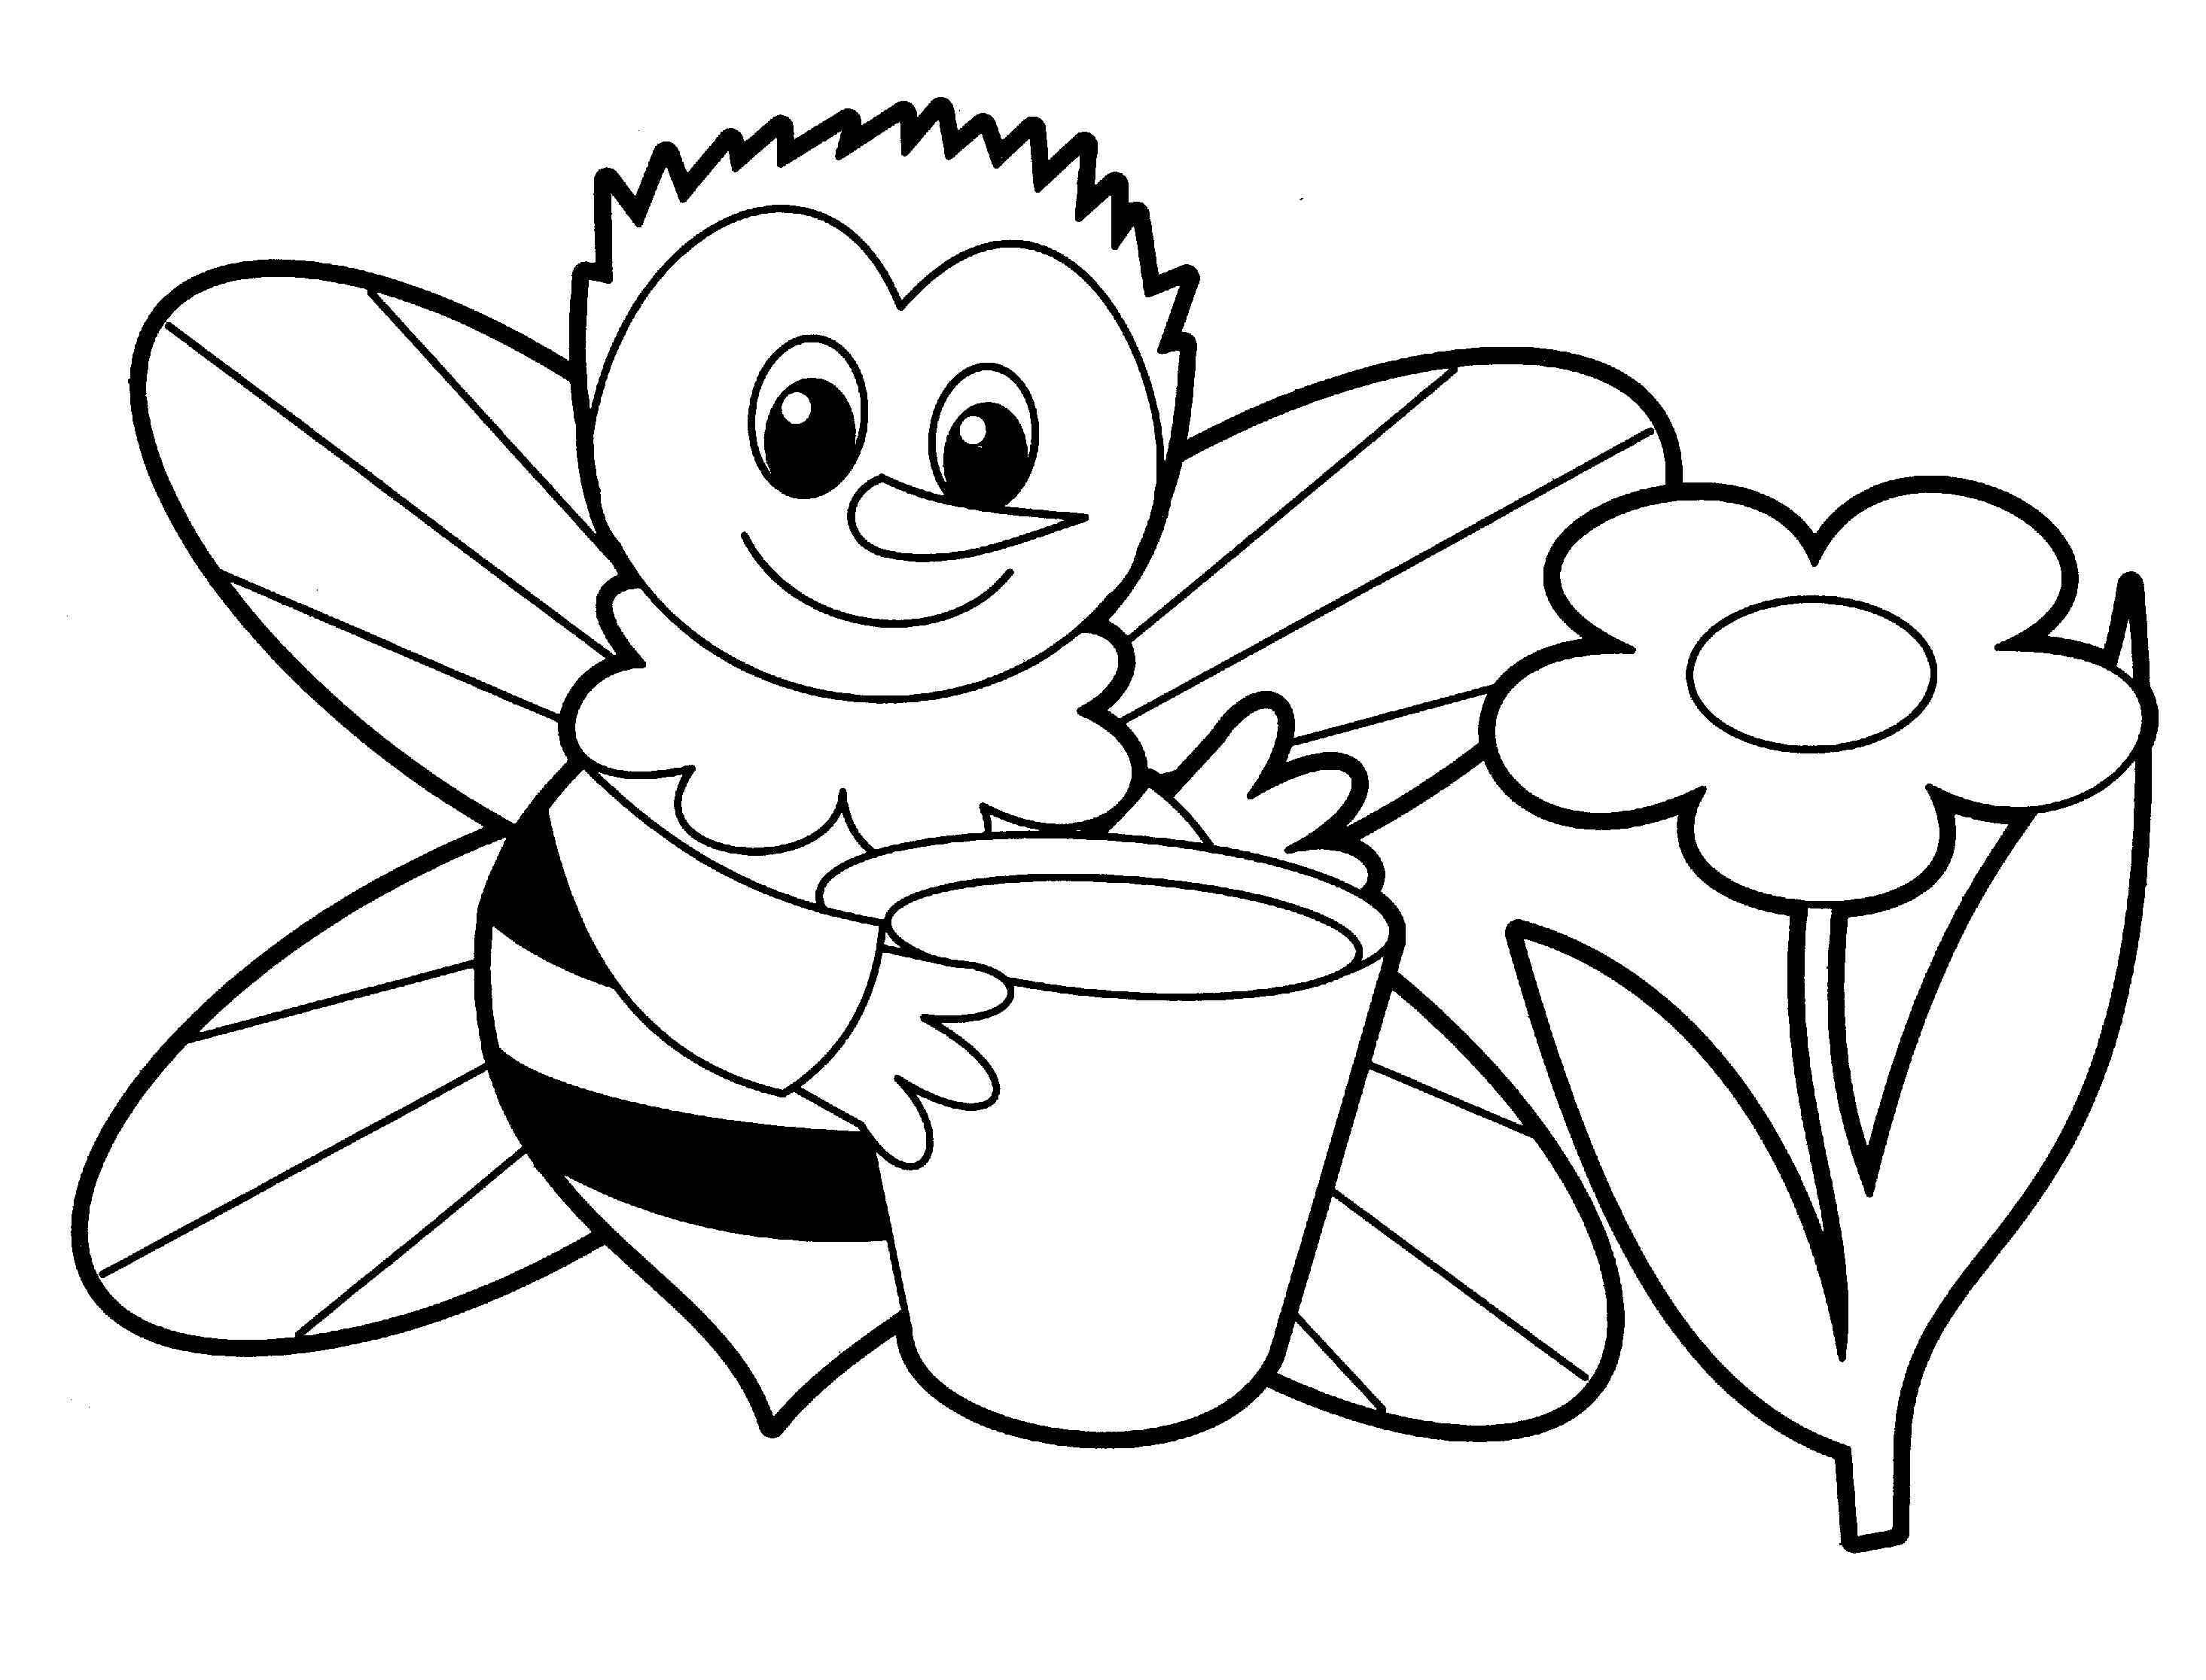 Картинки для детей распечатать. Раскраски для детей. Пчелка раскраска. Раскраски для дошкольников. Пчела раскраска.